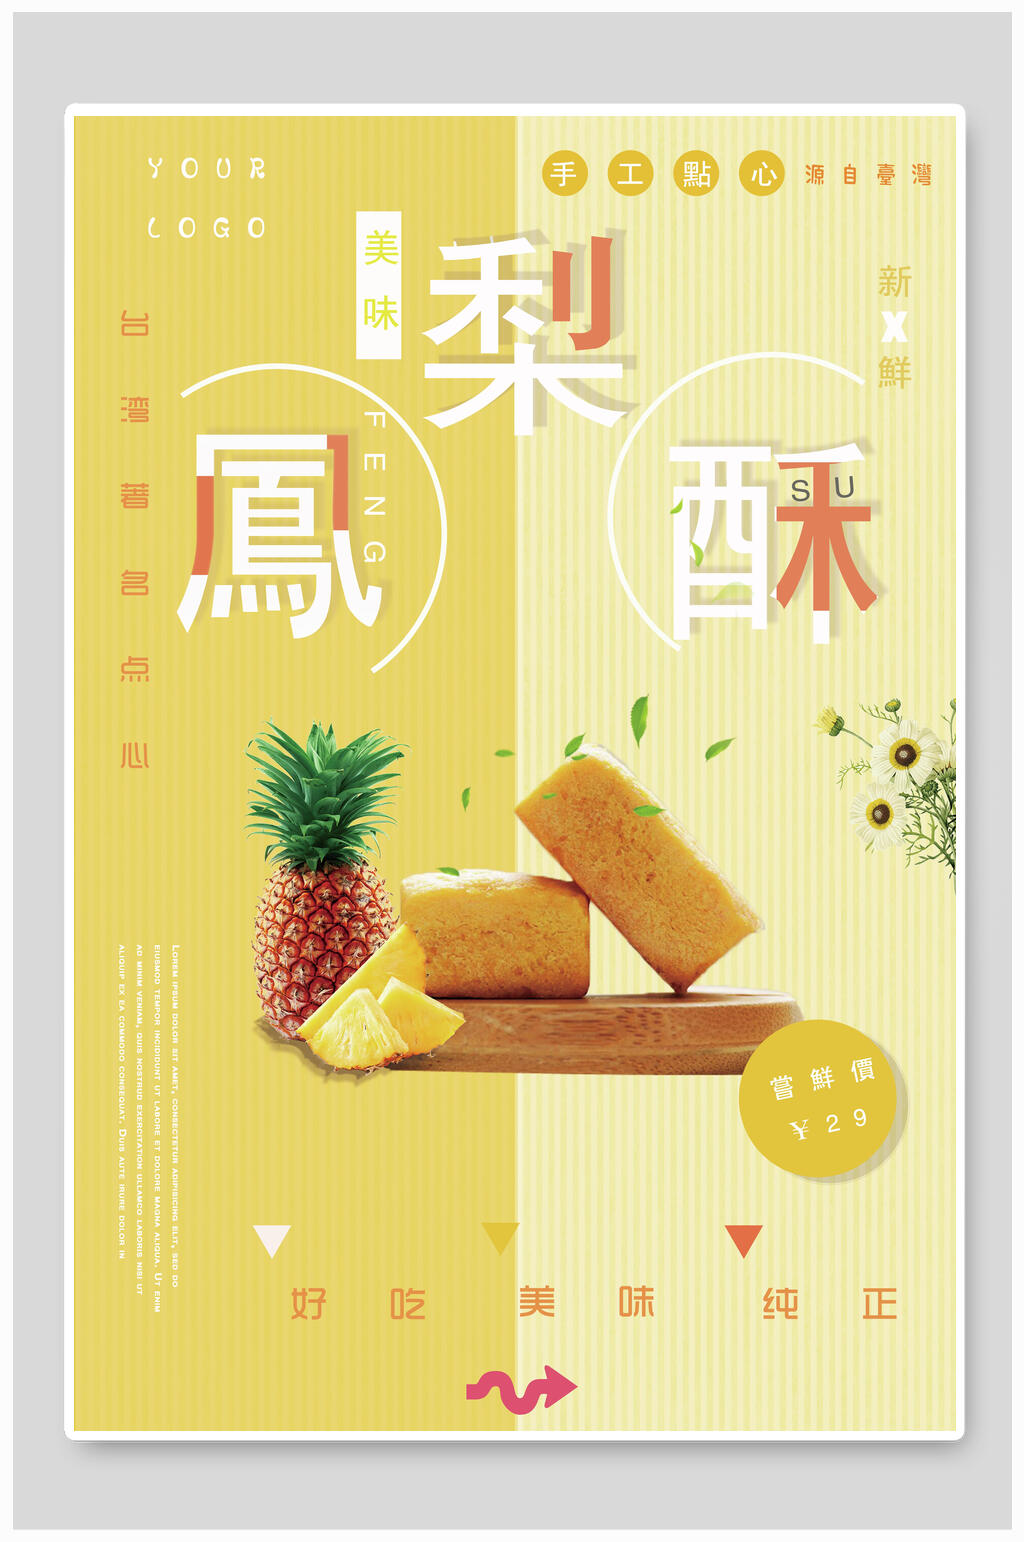 凤梨酥好吃美味纯正台湾海报